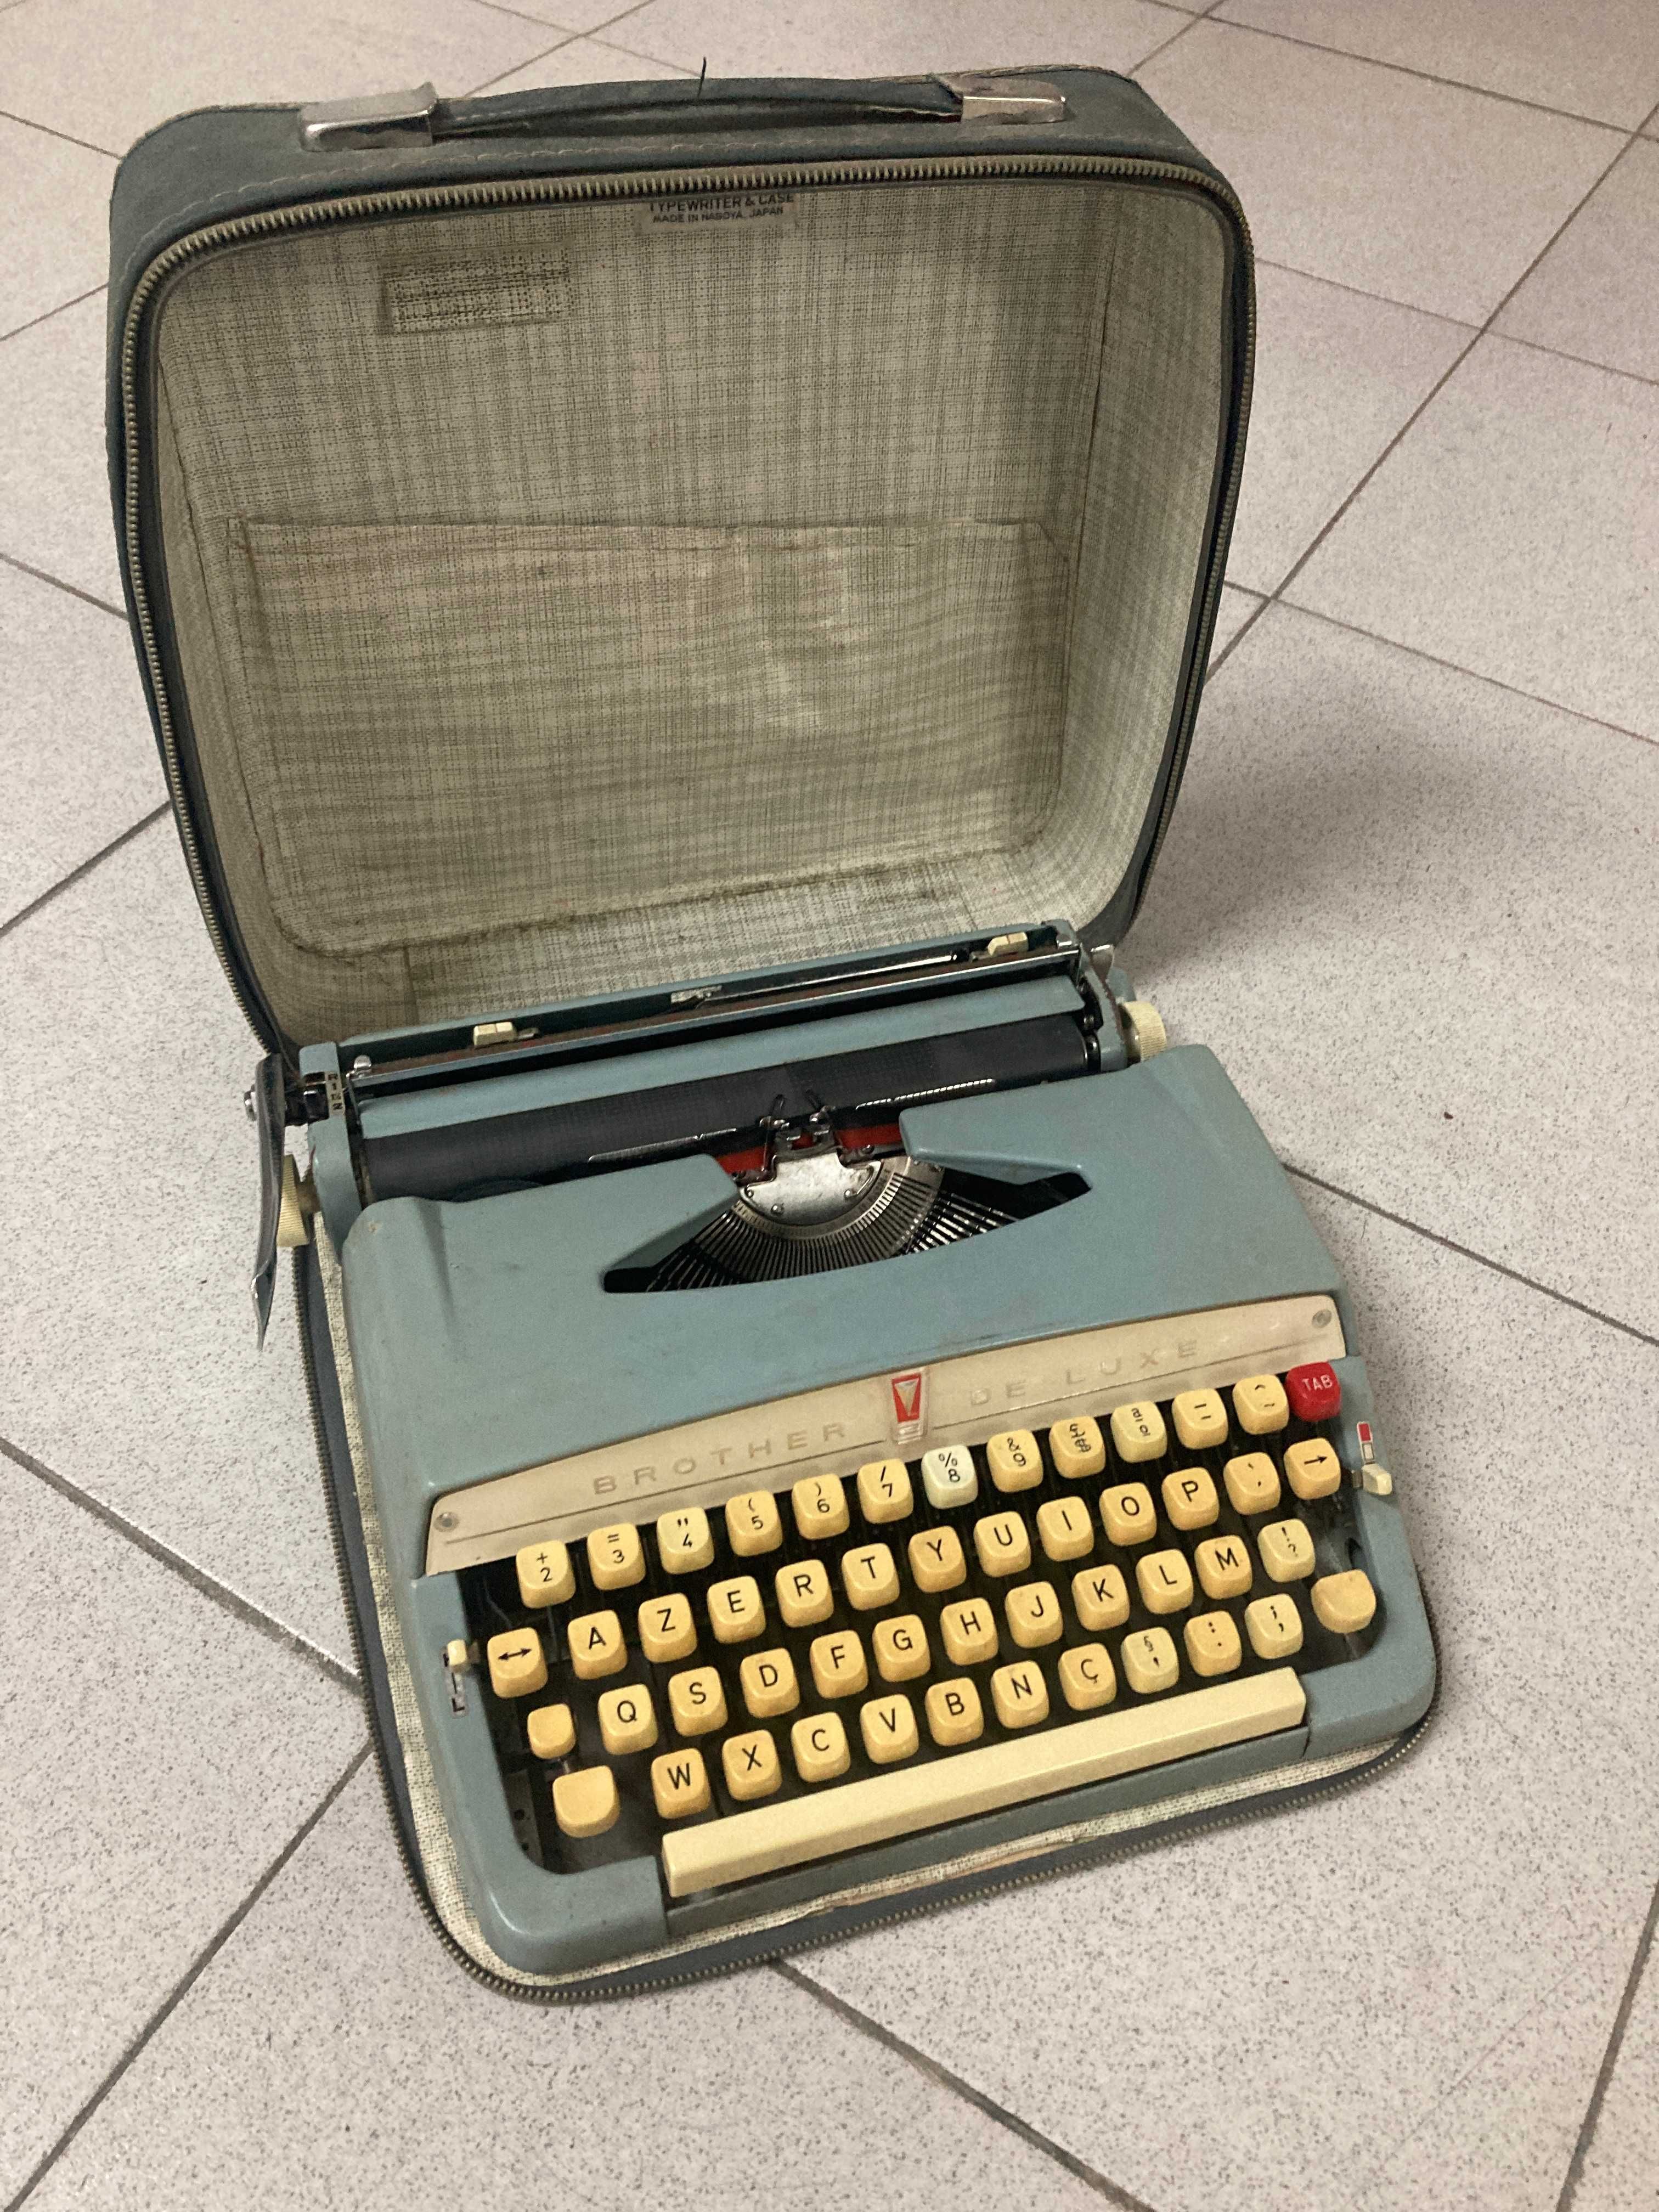 Maquina de escrever antiga Brother de luxe